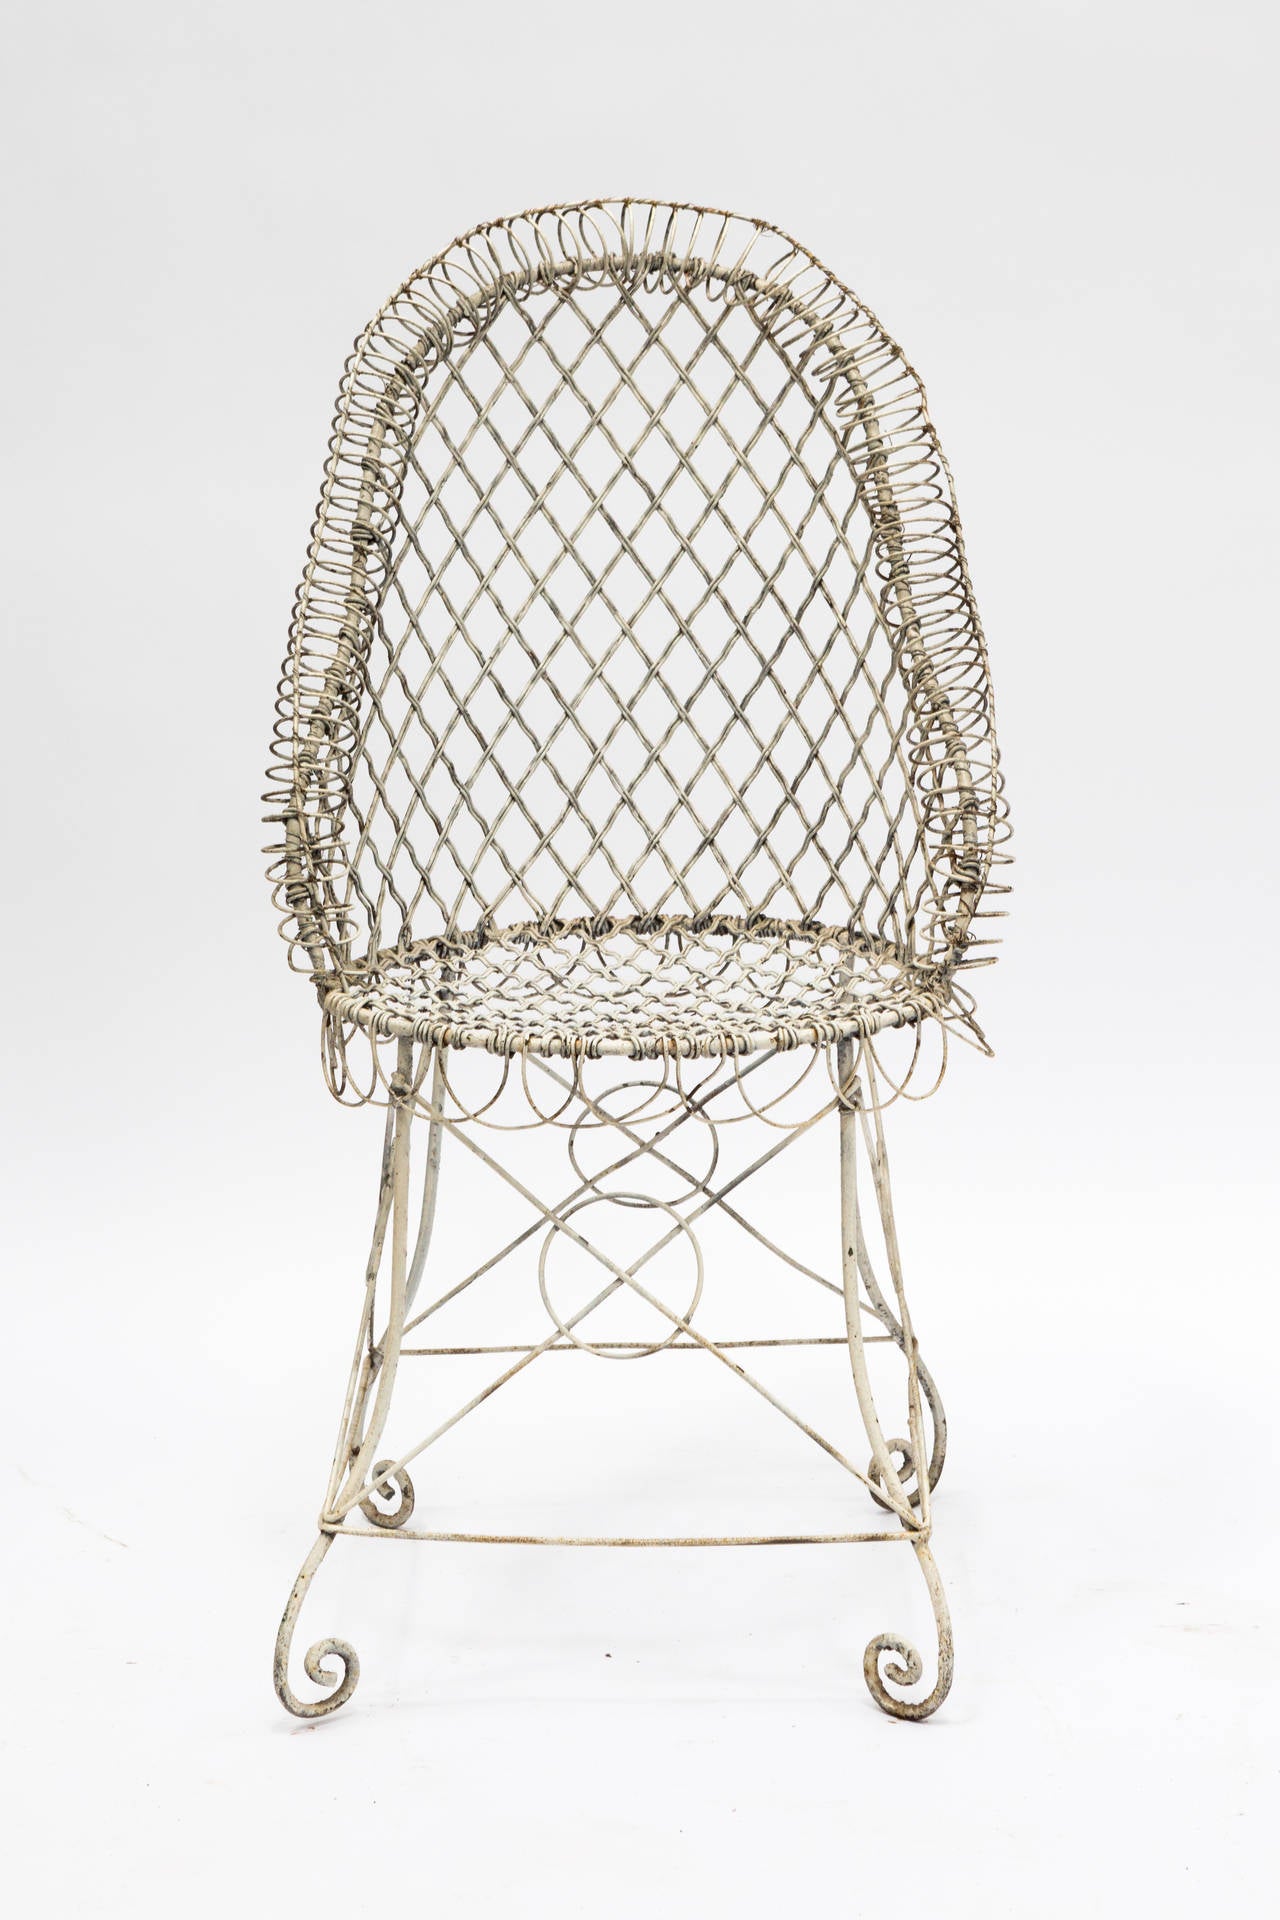 wire garden chairs